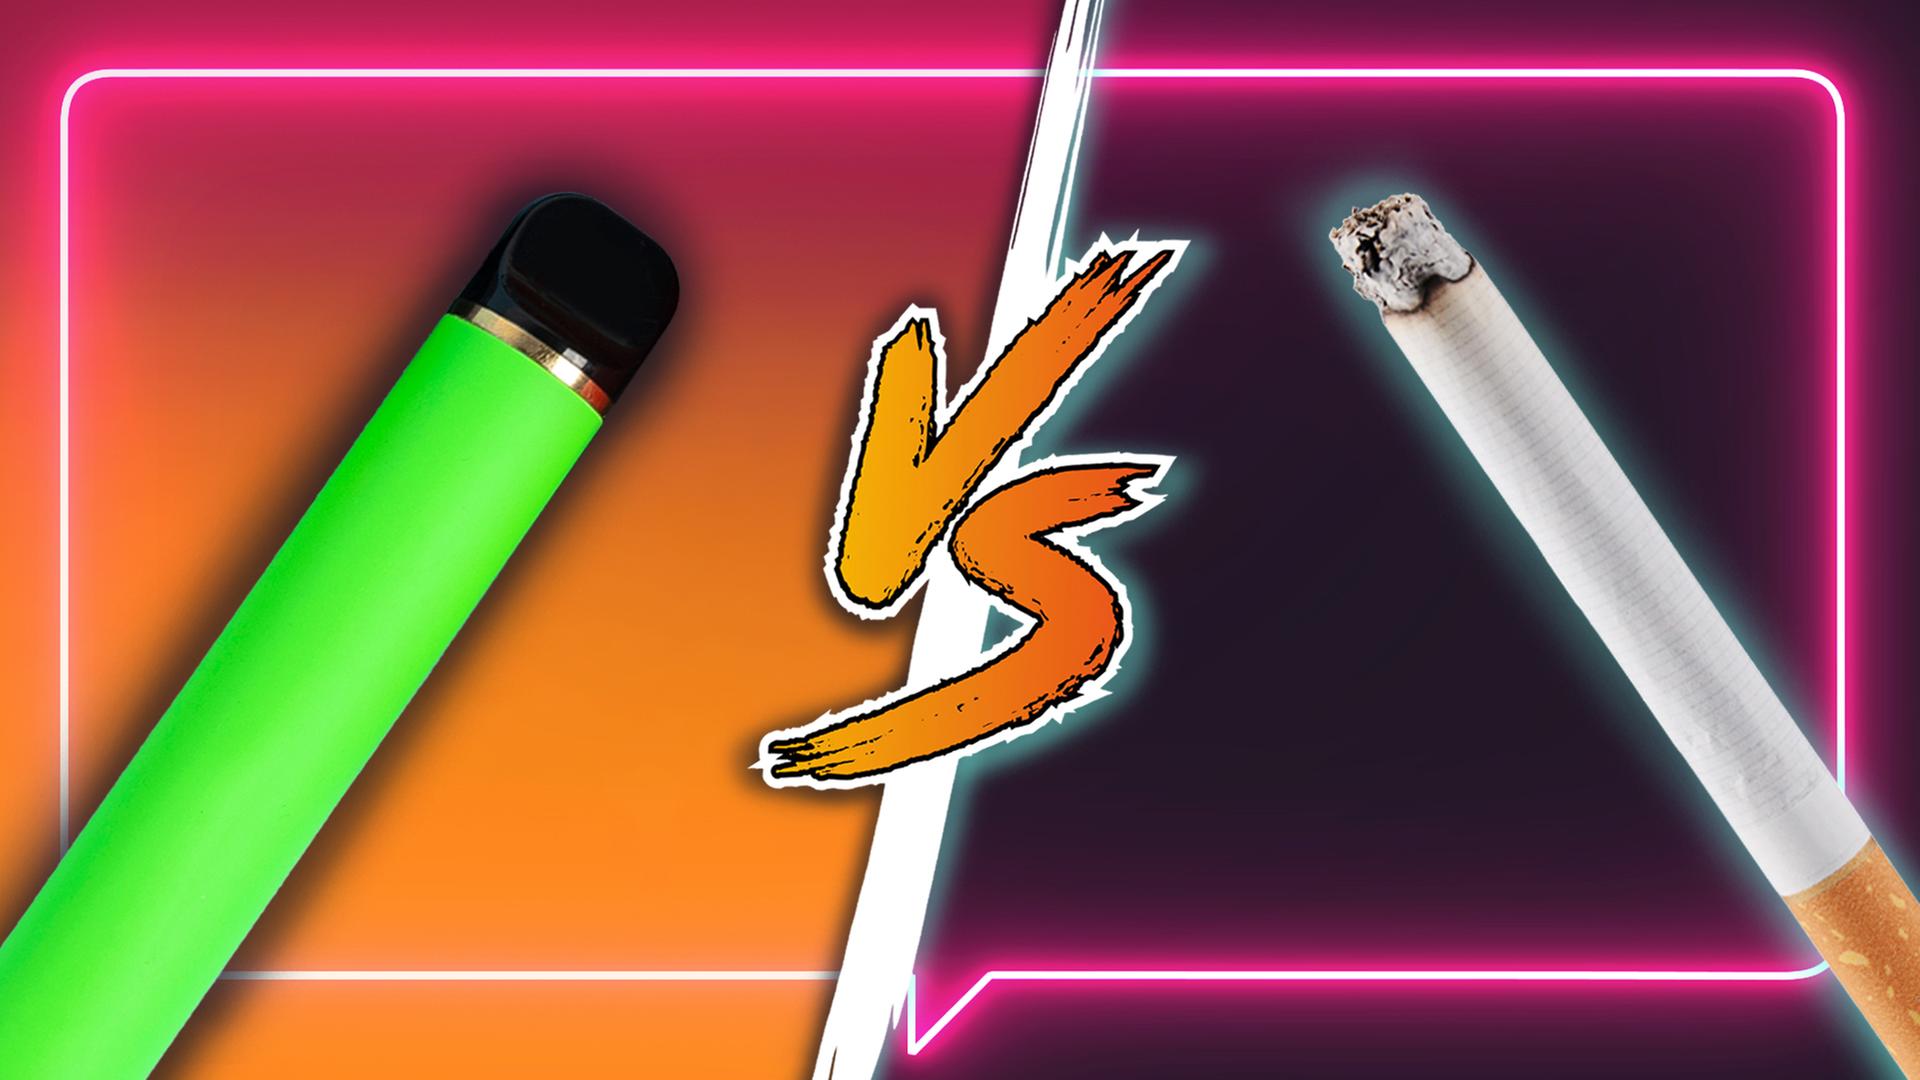 Links im Bild eine grüne E-Zigarette und rechts eine normale Zigarette. In der Mitte befindet sich die Aufschrift Versus.